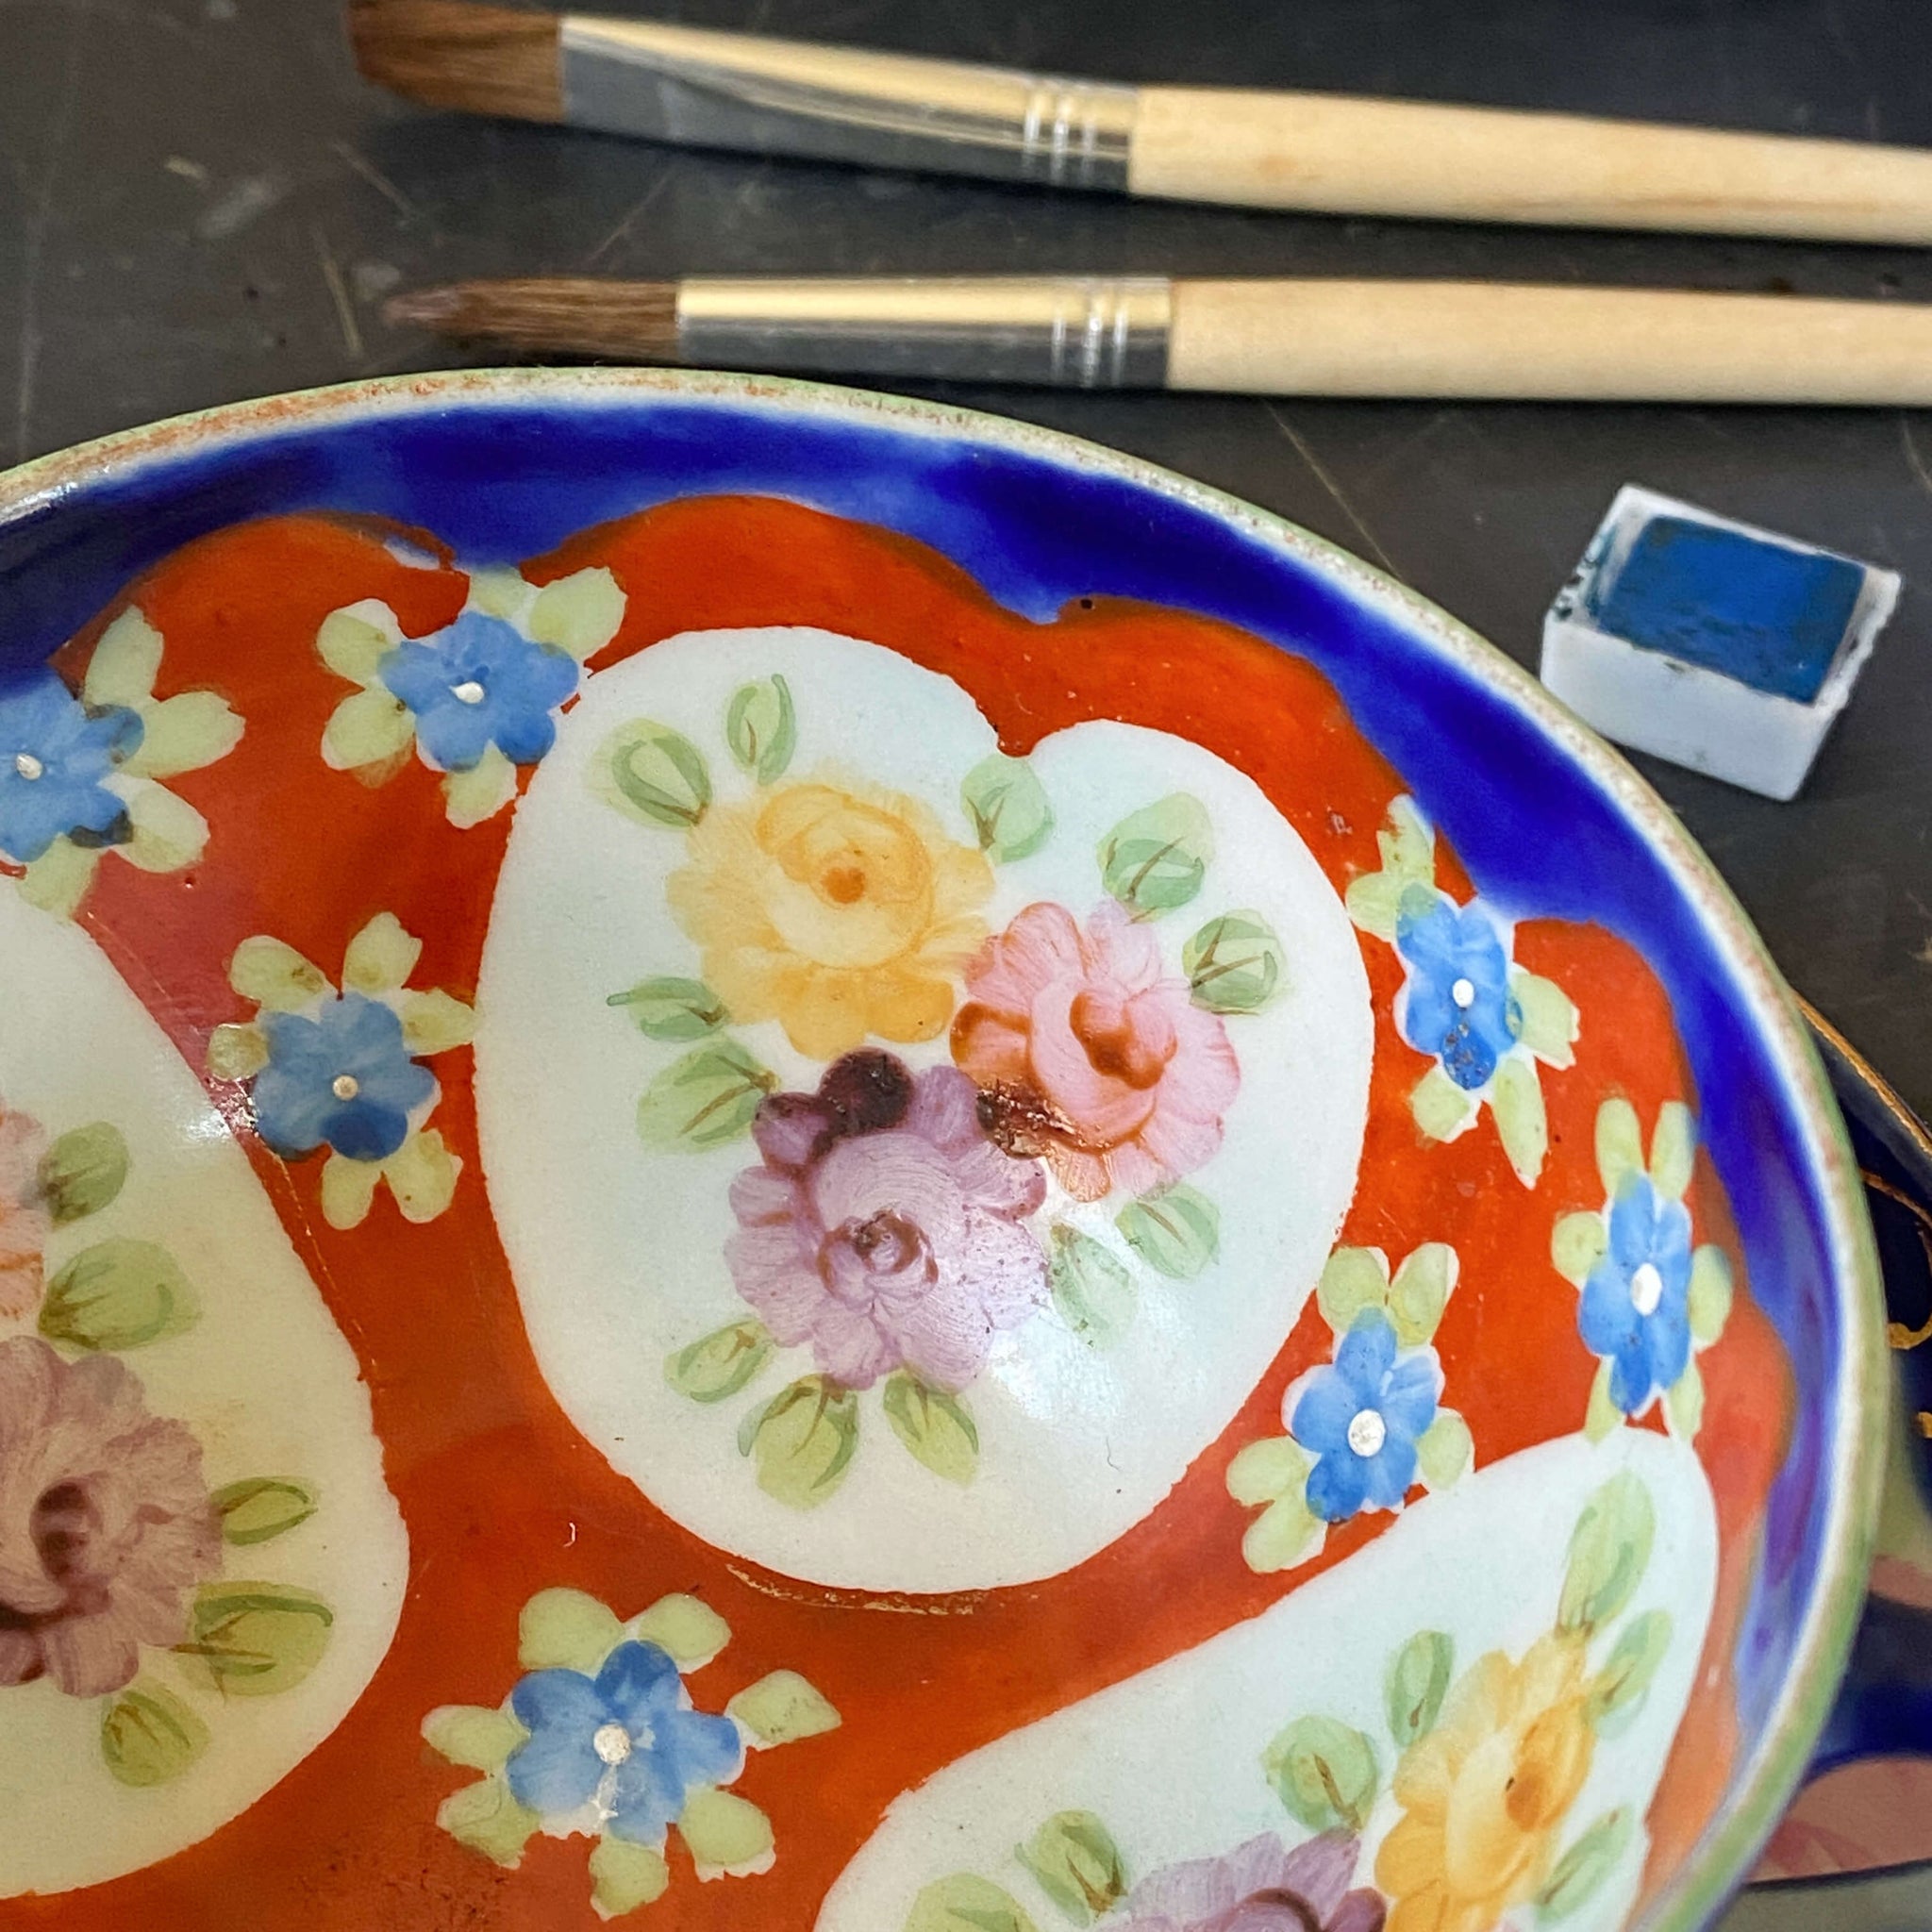 Antique Japanese Porcelain Cup & Saucer - Handpainted Florals circa 1910-1920s